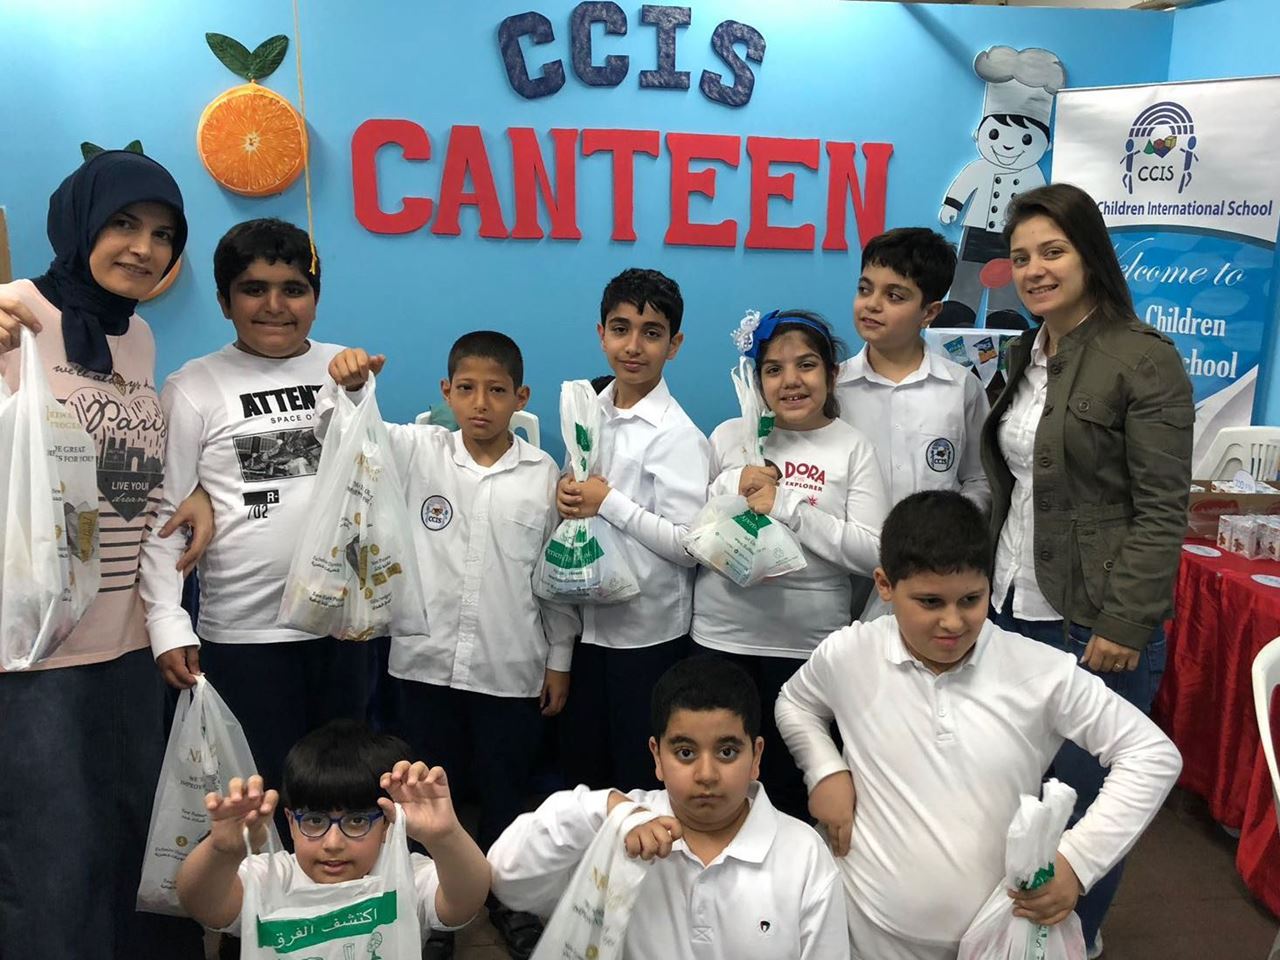 مركز سلطان يستضيف طلاب مدرسة الأطفال المبدعين العالمية في تجربة تسوق حقيقة